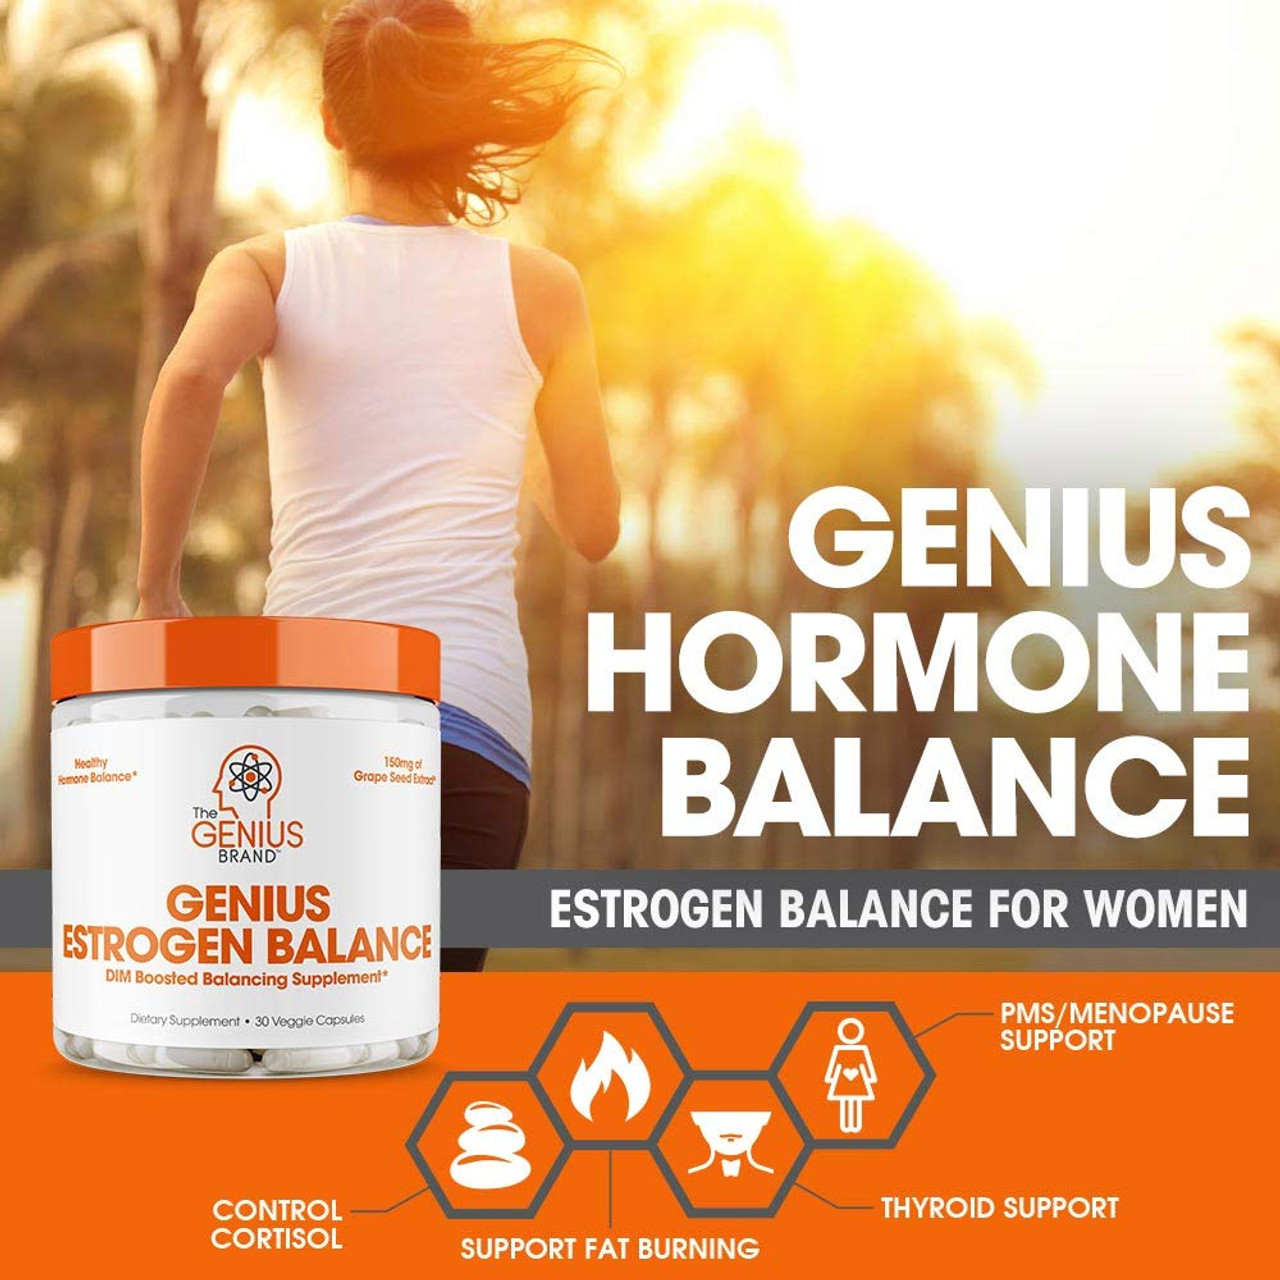 DIM with BioPerine - Supports Hormone Balance & Estrogen